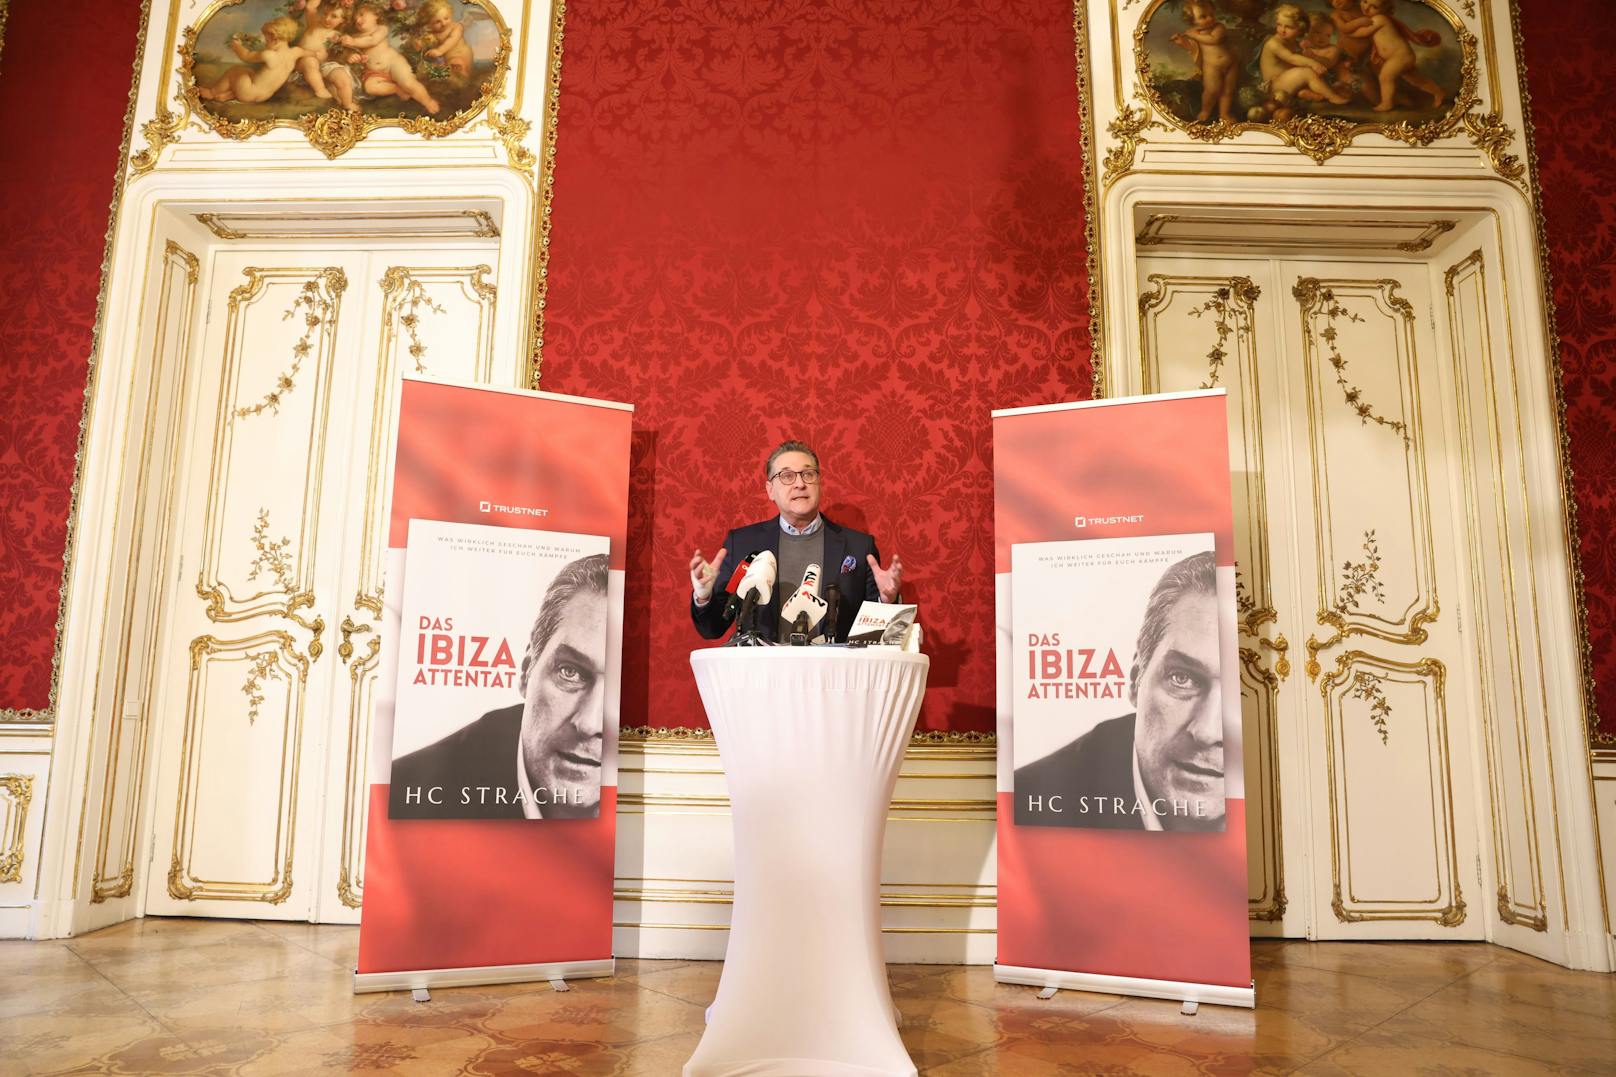 HC Strache bei der Buchpräsentation "Das Ibiza Attentat"